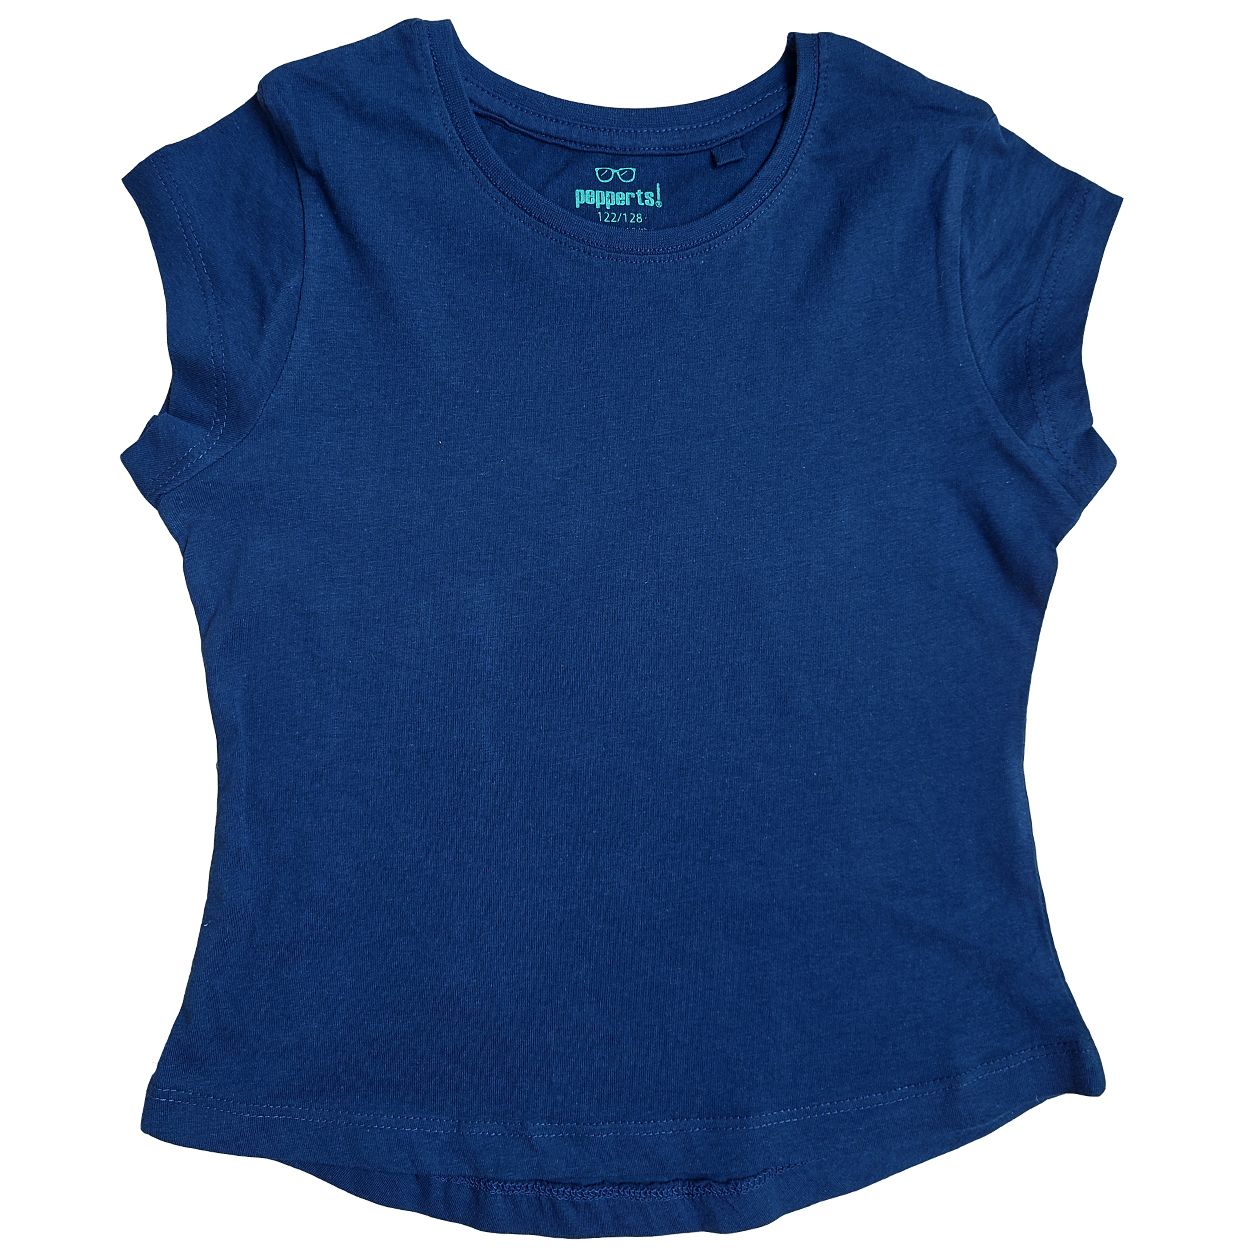 تی شرت آستین کوتاه دخترانه پیپرتس مدل اندامی رنگ آبی کاربنی